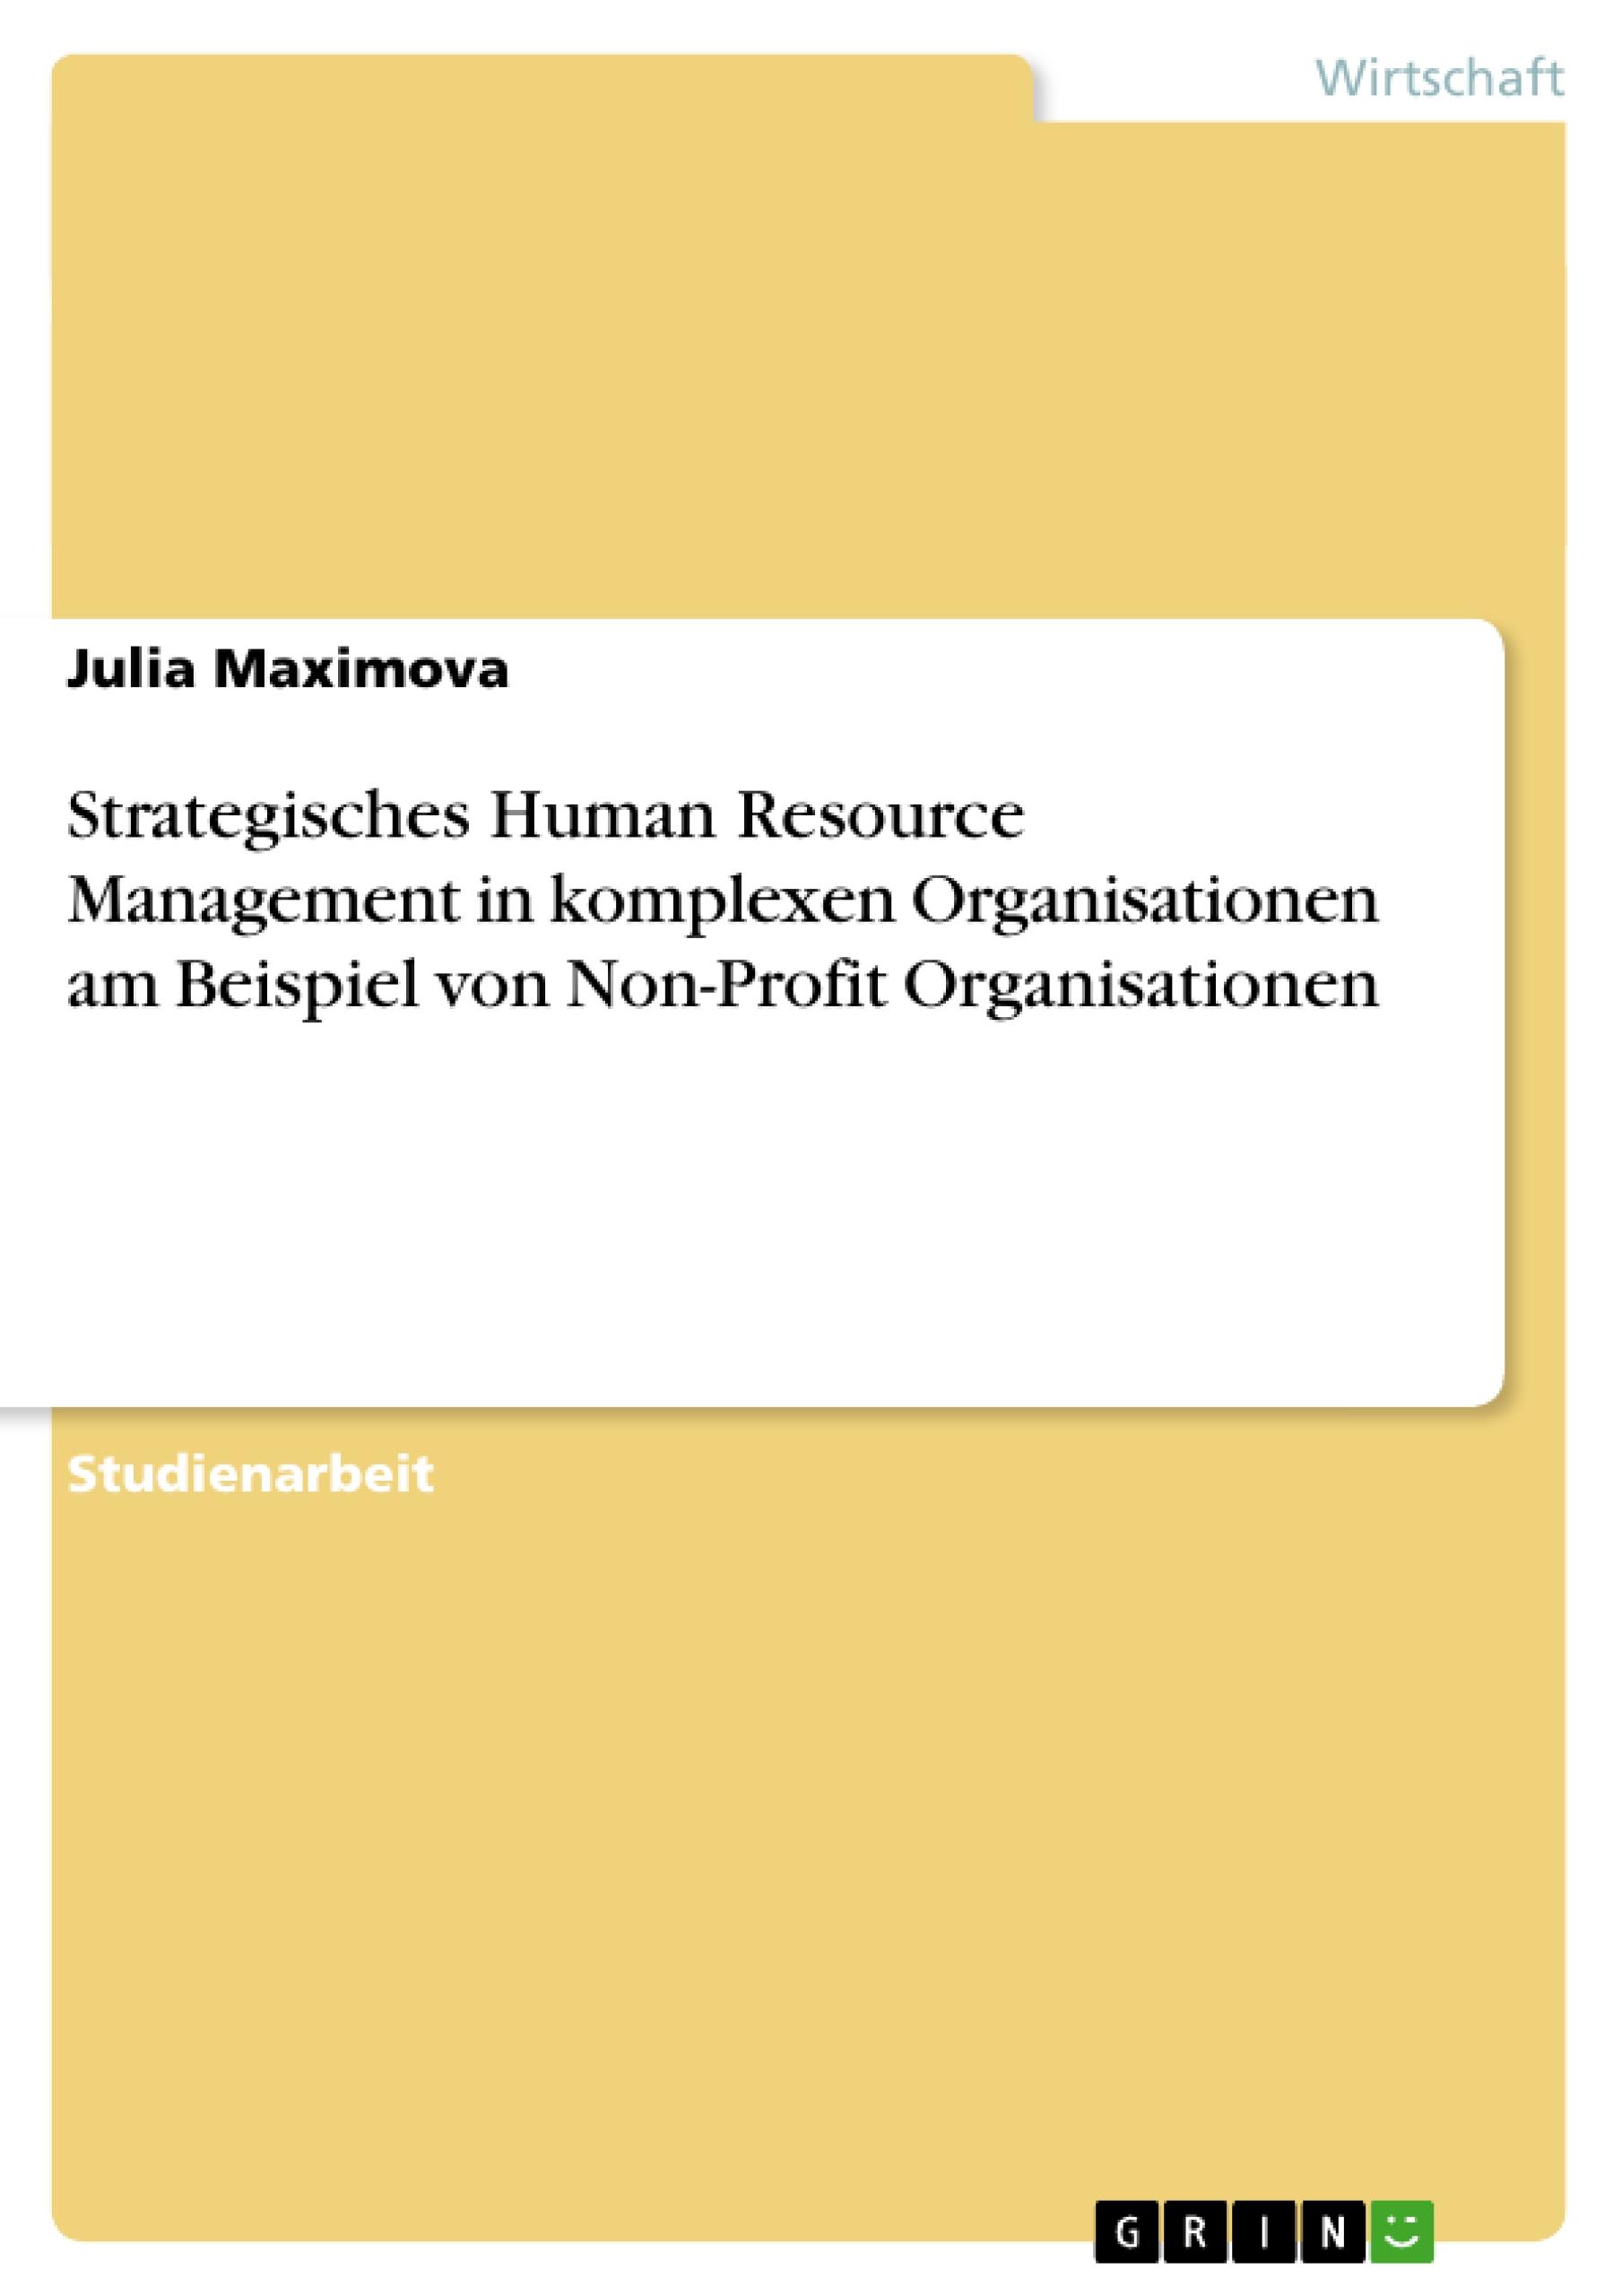 Strategisches Human Resource Management in komplexen Organisationen am Beispiel von Non-Profit Organisationen - Maximova, Julia